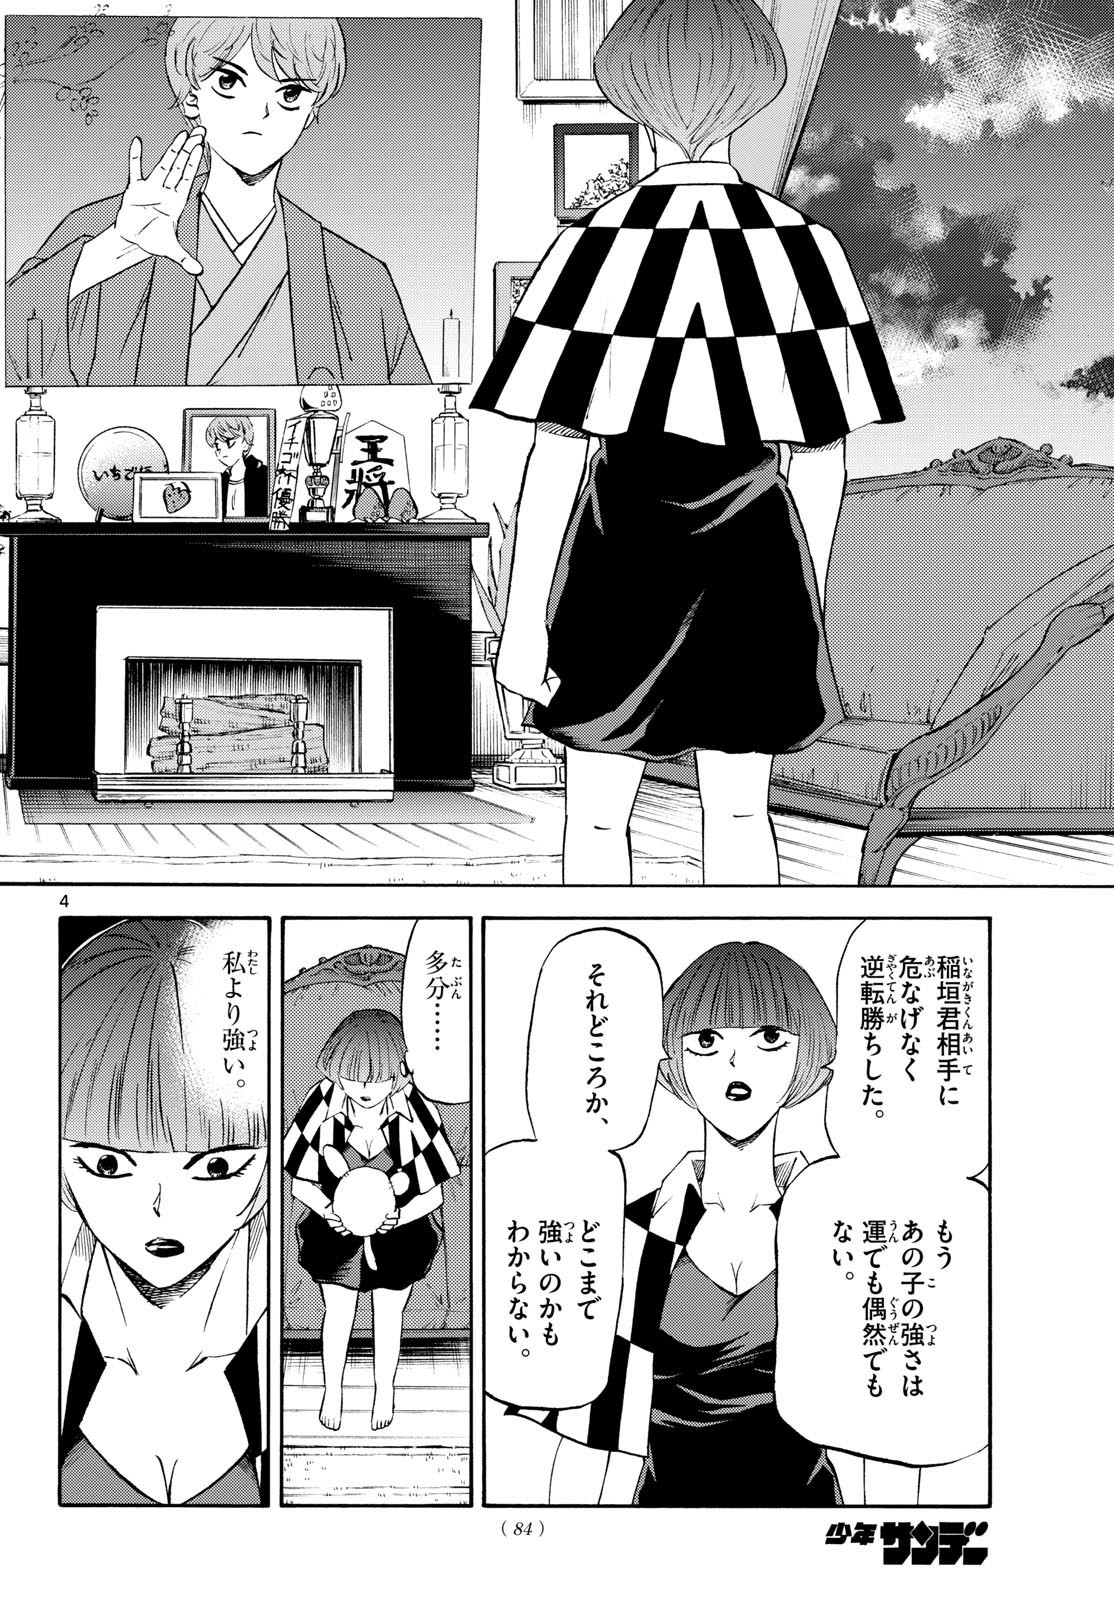 Tatsu to Ichigo - Chapter 199 - Page 4